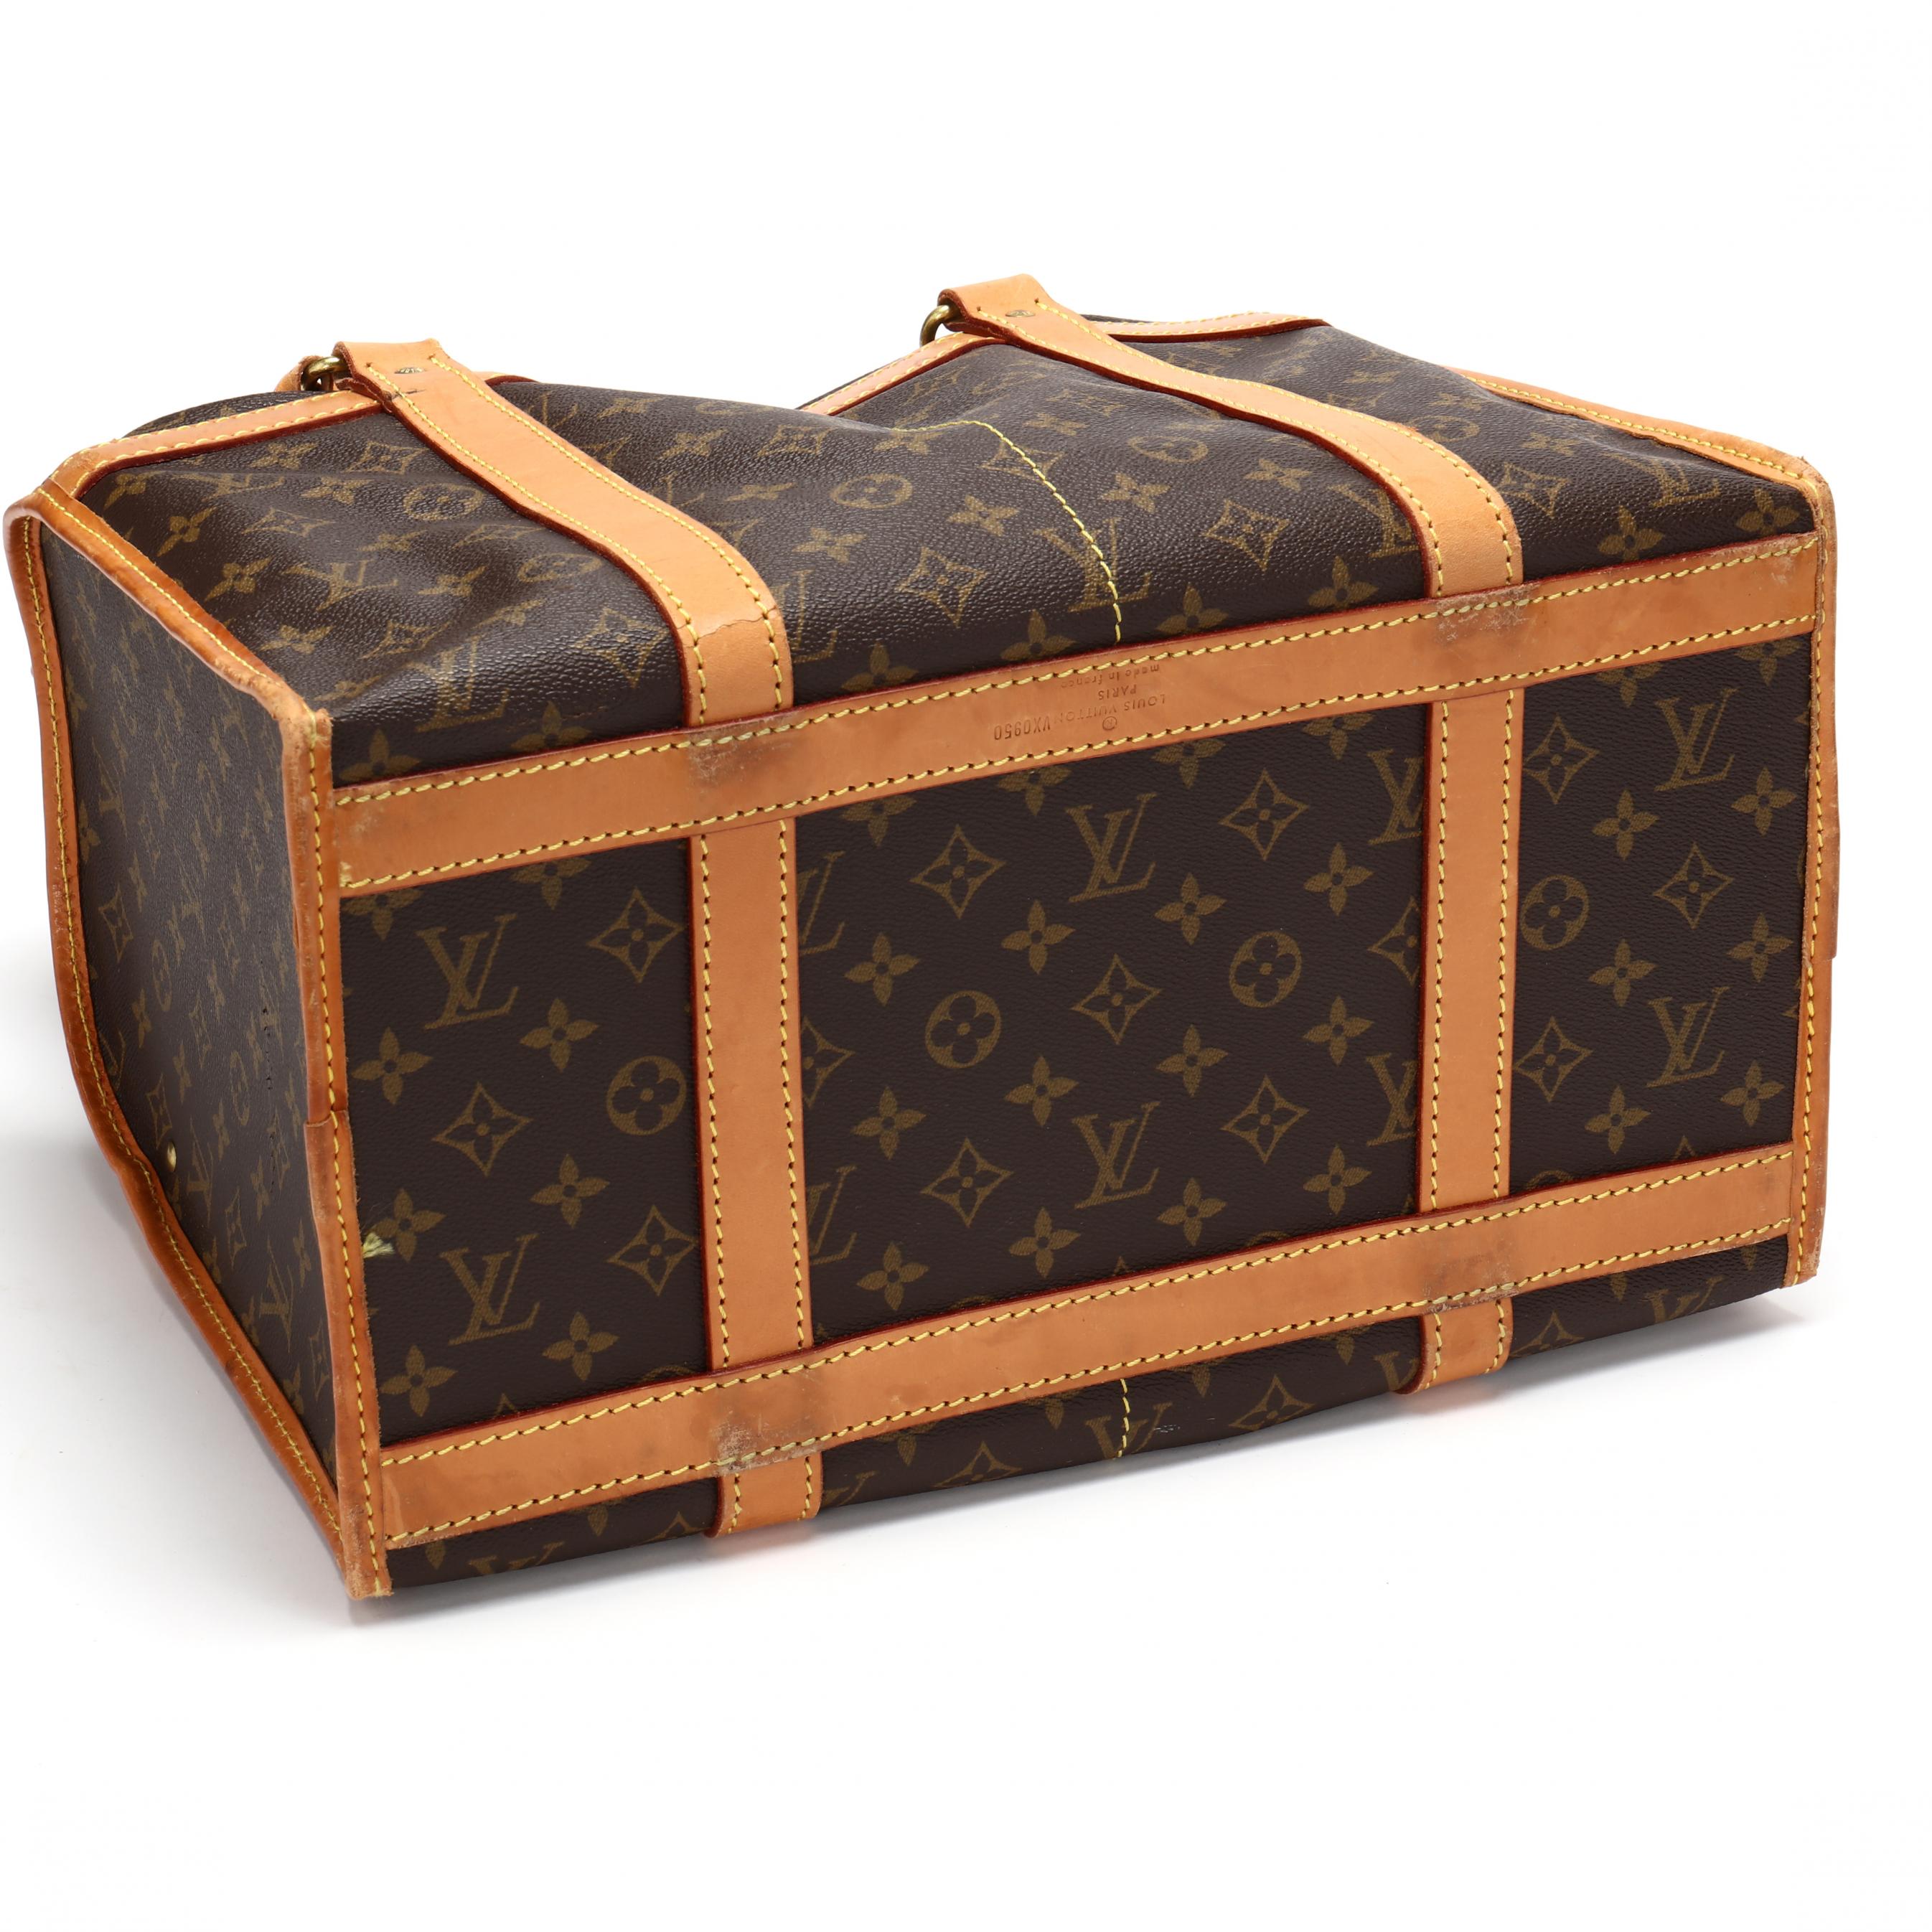 Vintage Louis Vuitton Sac Demi-souple Weekend Travel Bag Auction